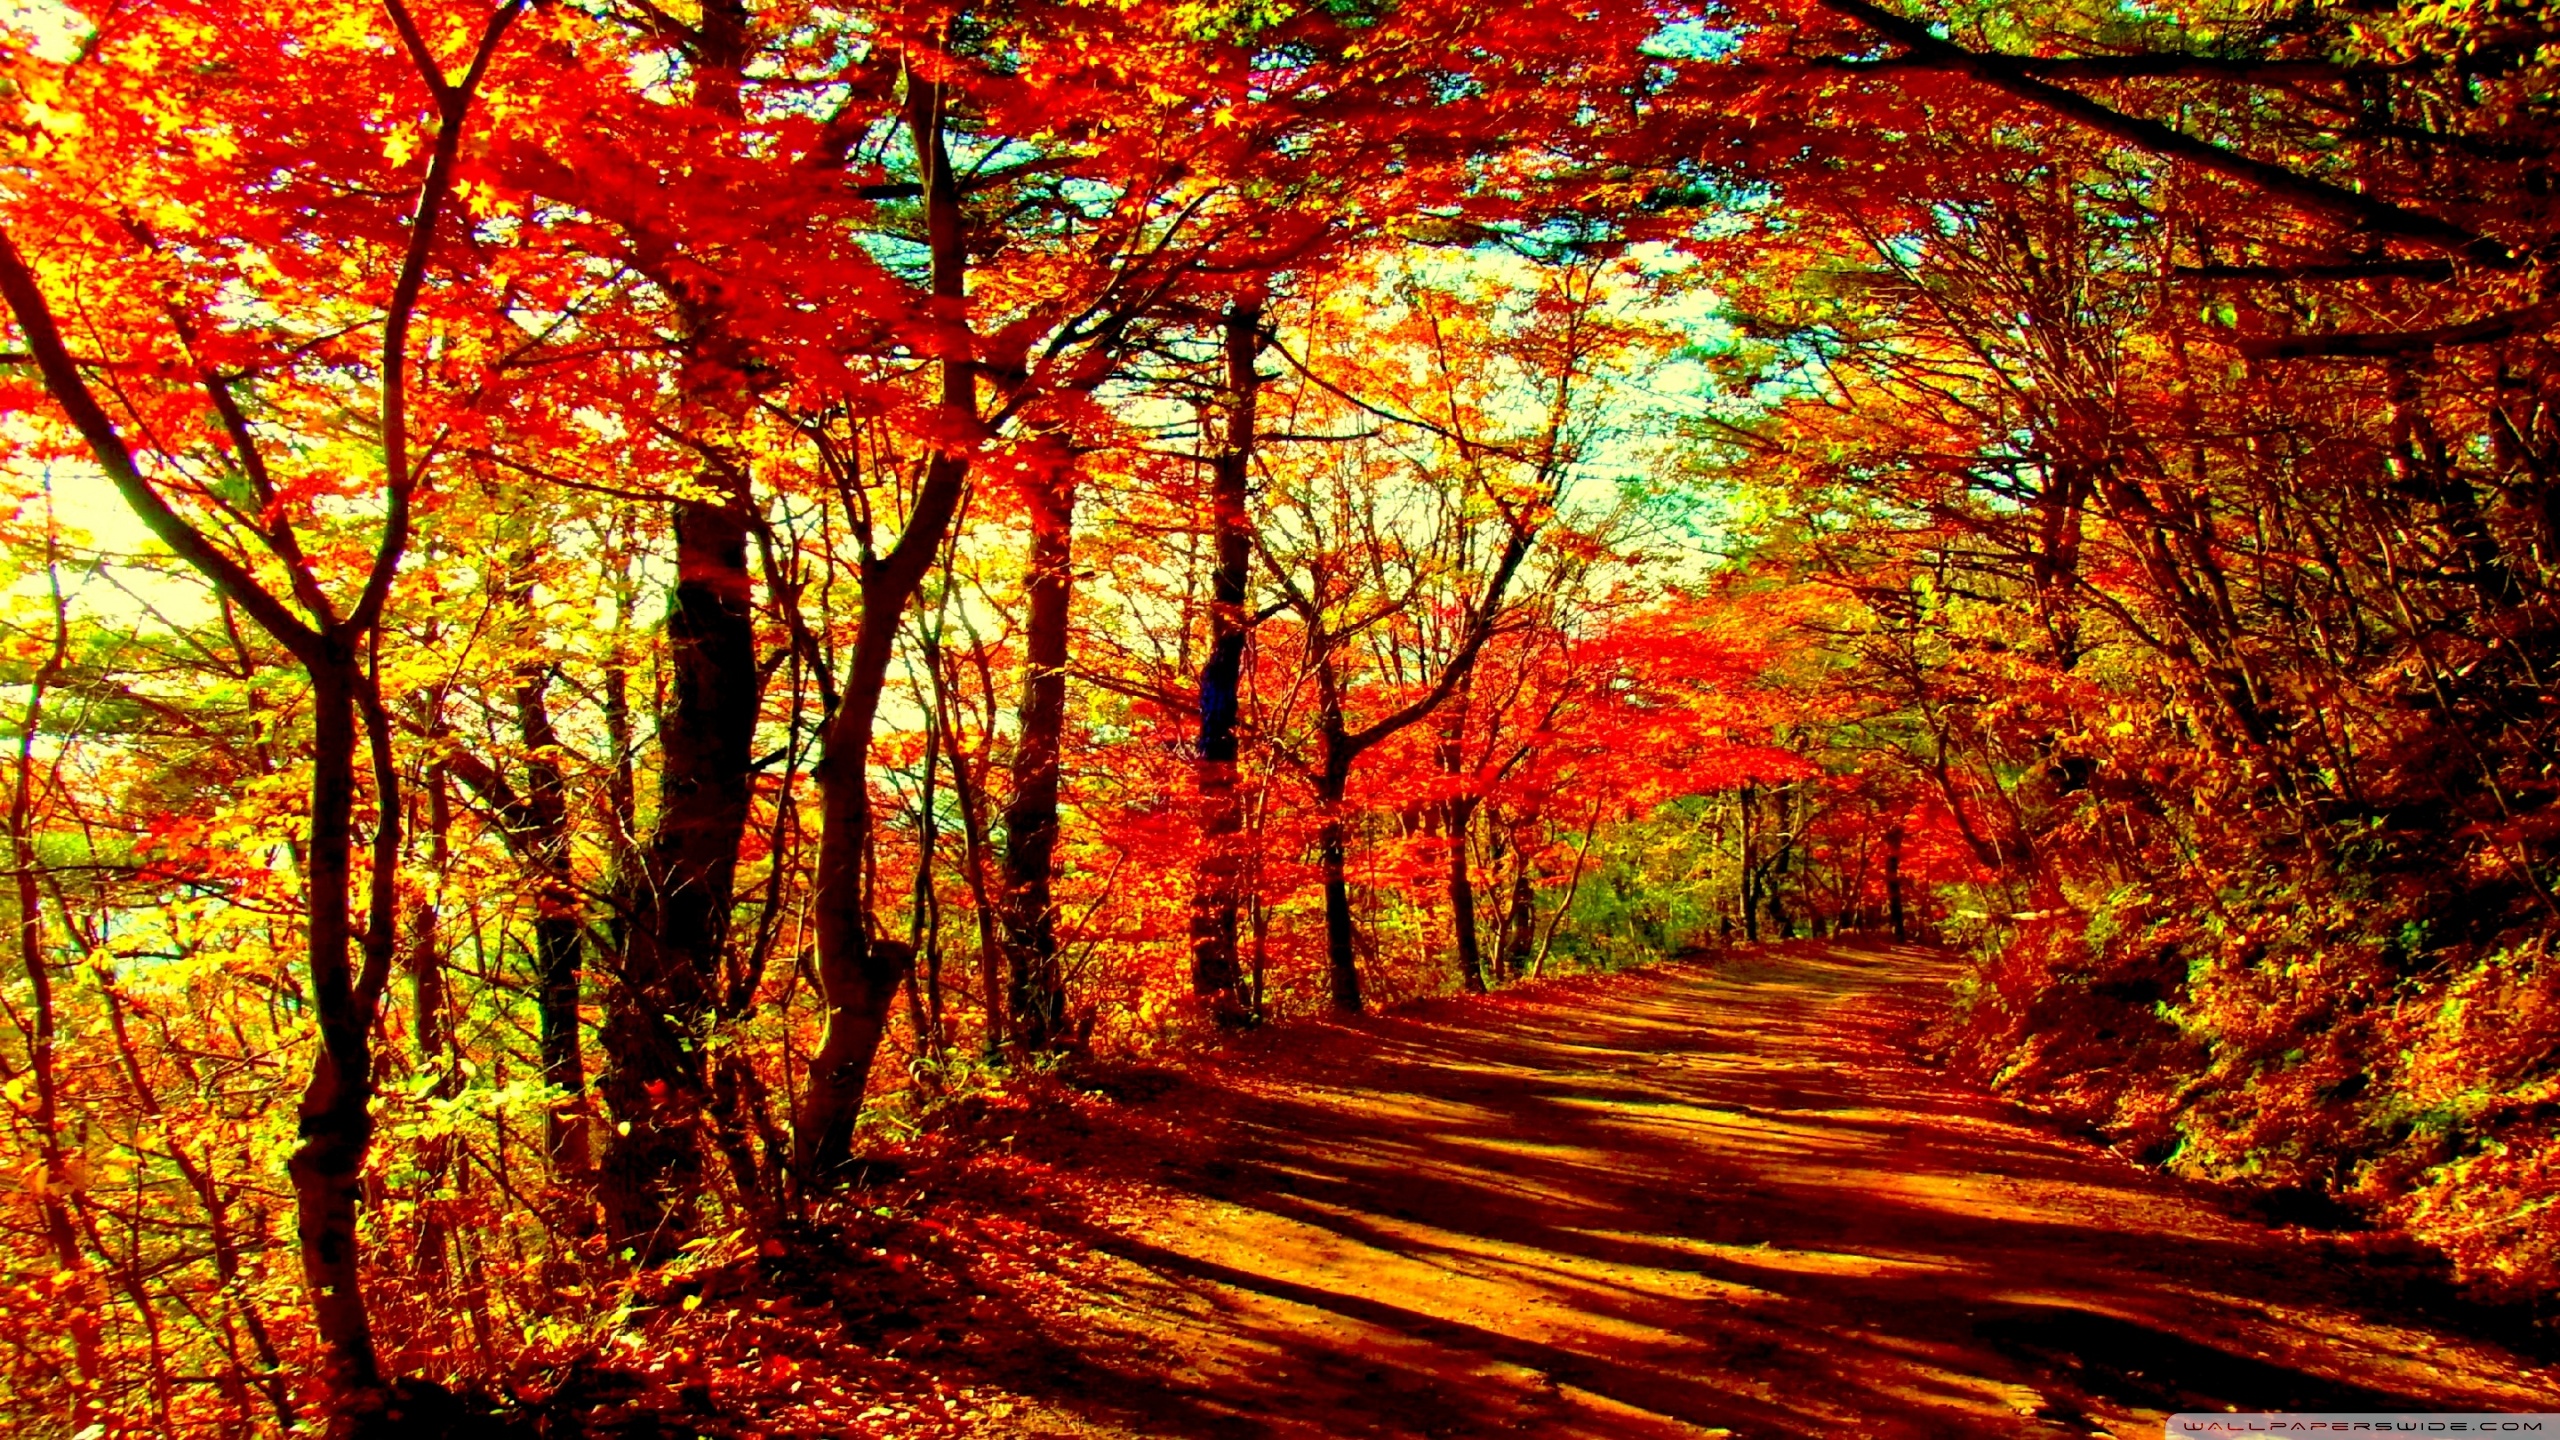 Hd 16 - - Autumn Forest Wallpaper Hd , HD Wallpaper & Backgrounds